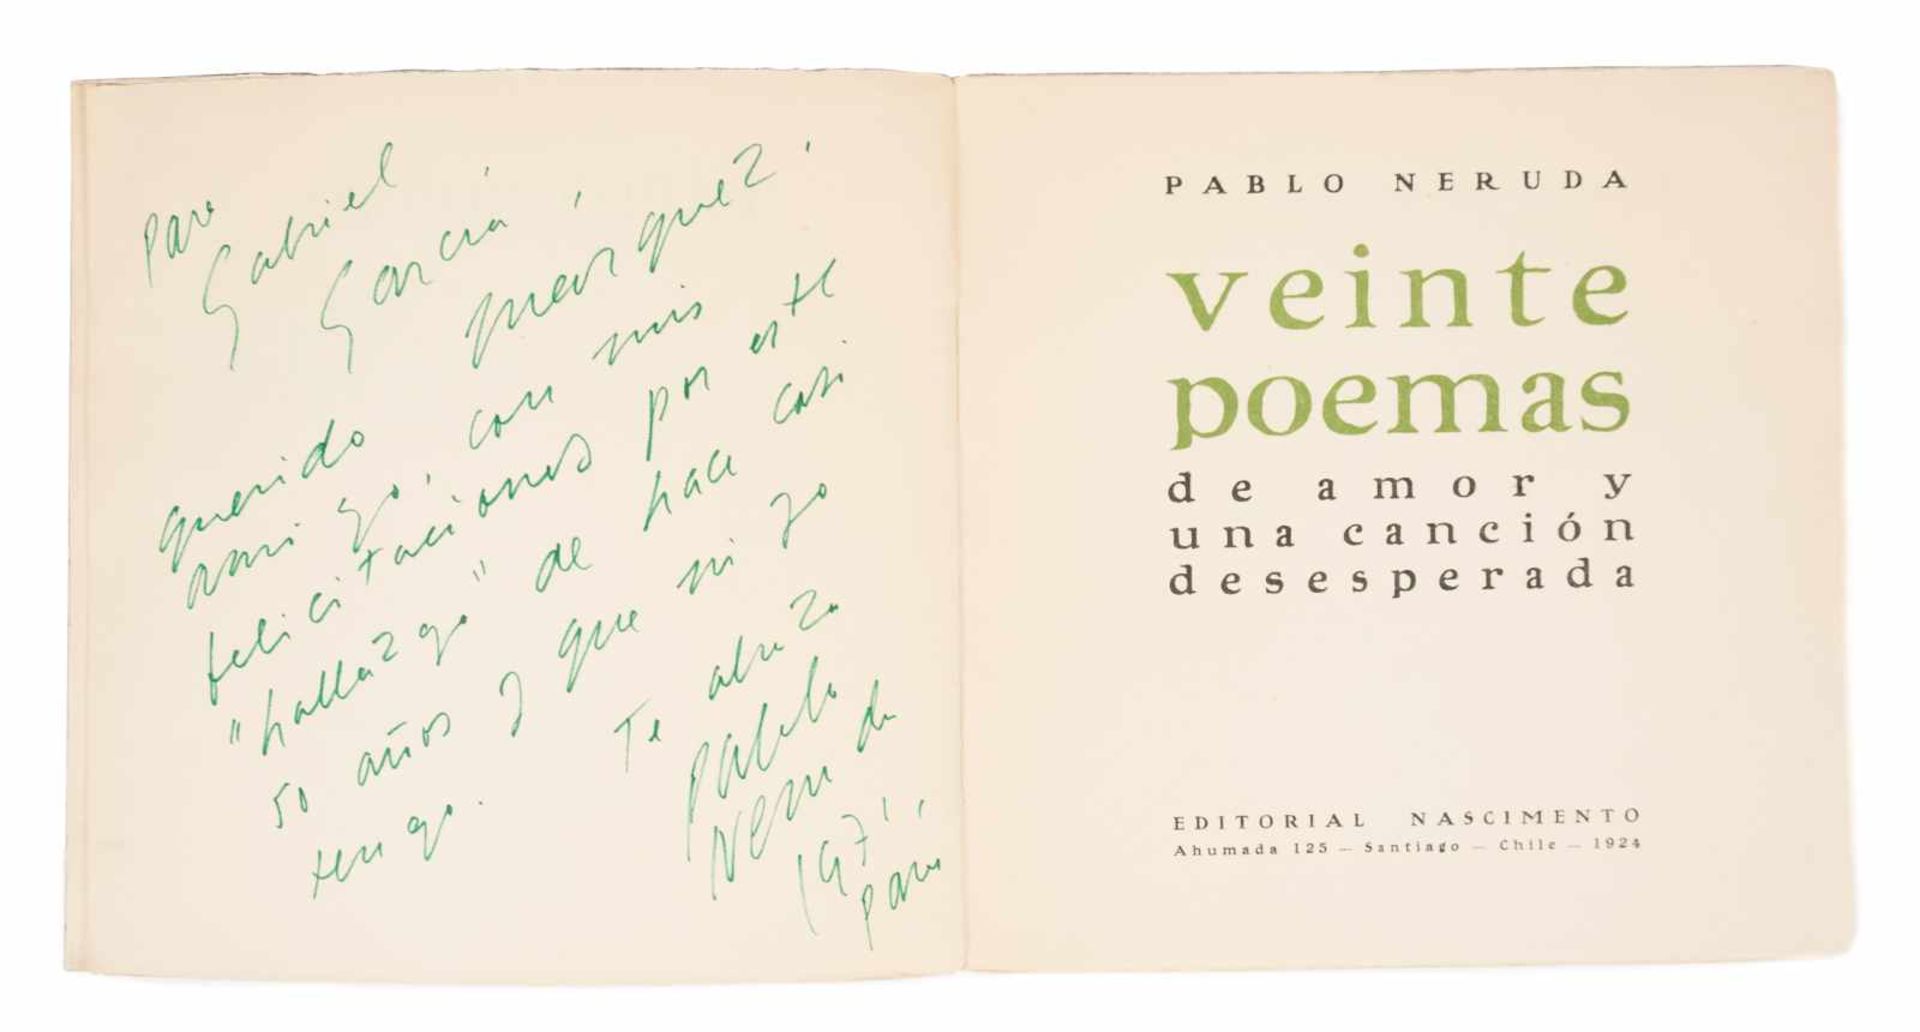 Neruda, Pablo. "Veinte poemas de amor y una canción desesperada" (Twenty love poems and a song of